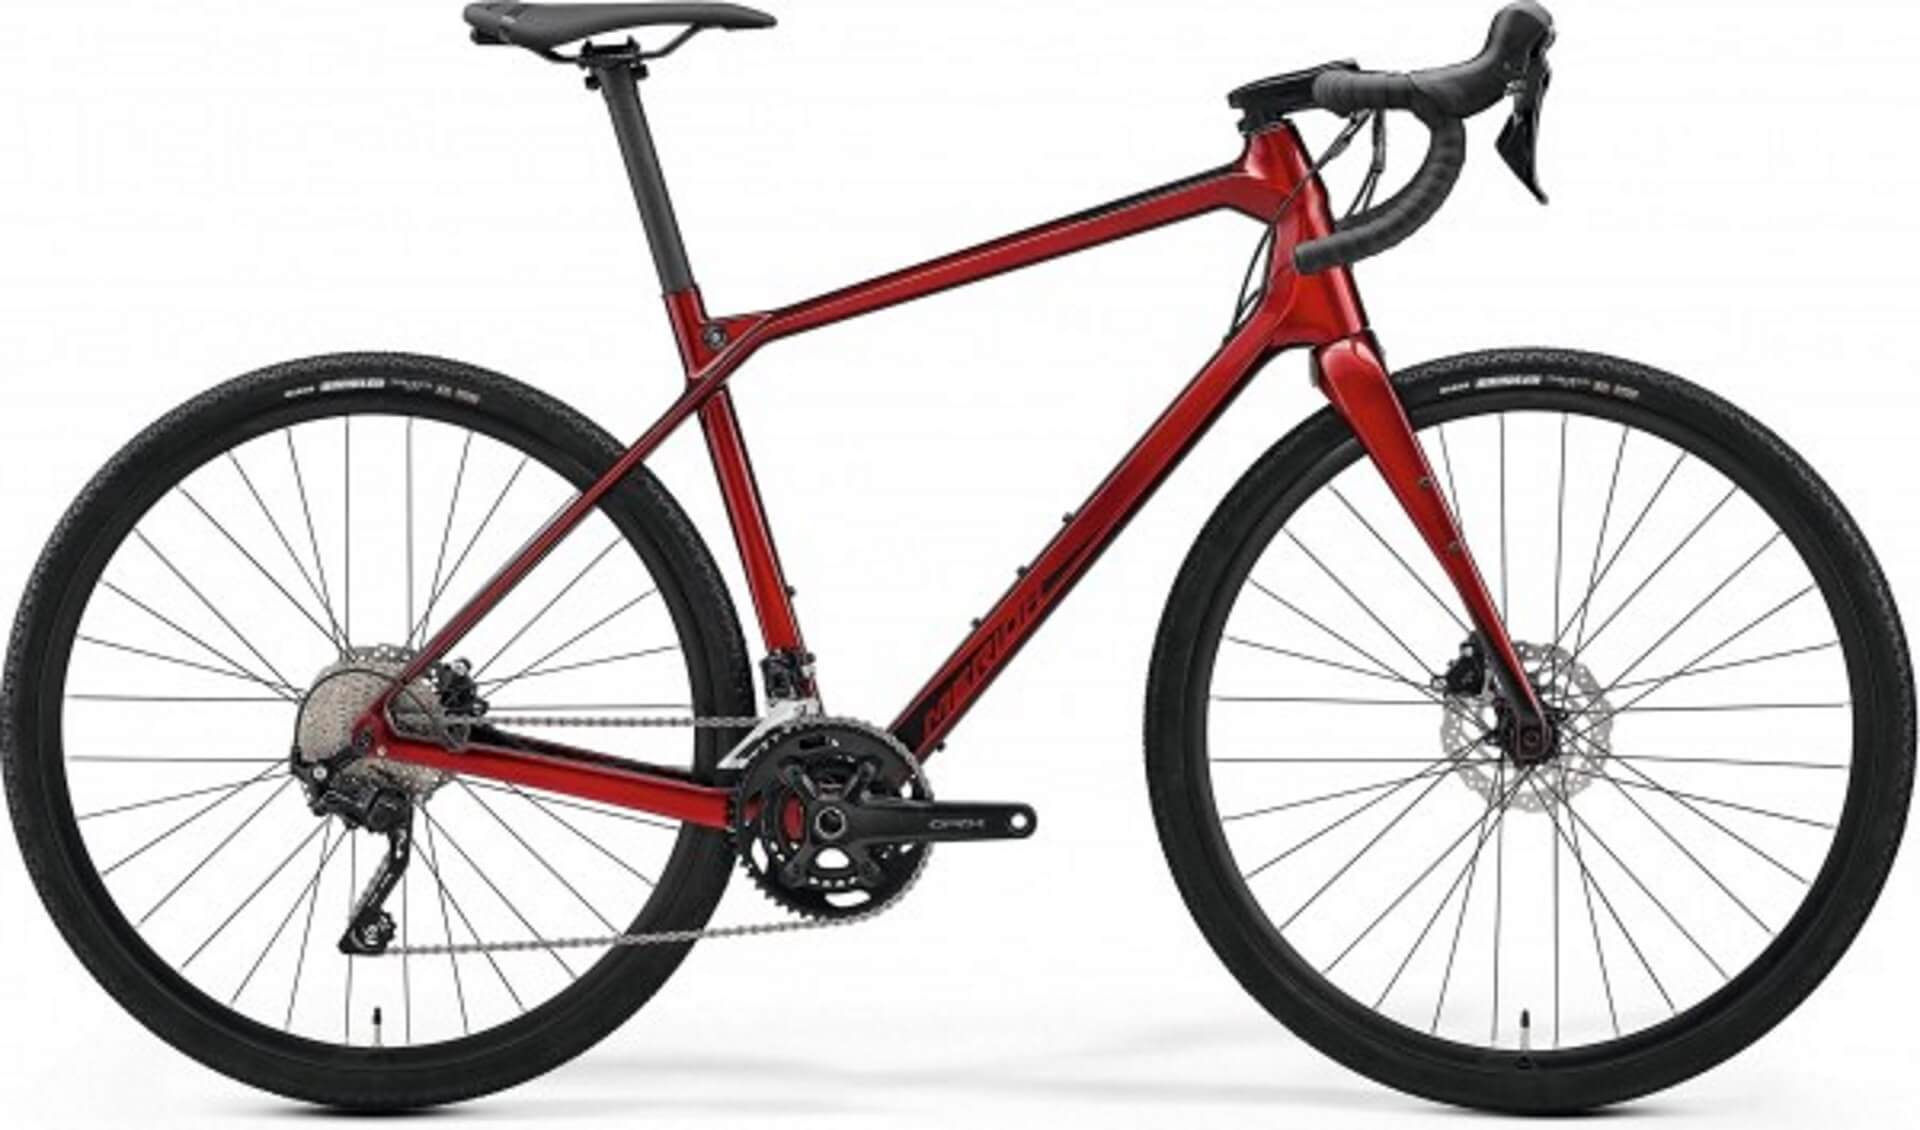 Gravel Bike mit Carbon-Rahmen von Merida. Modell Silex 4000 in rot7